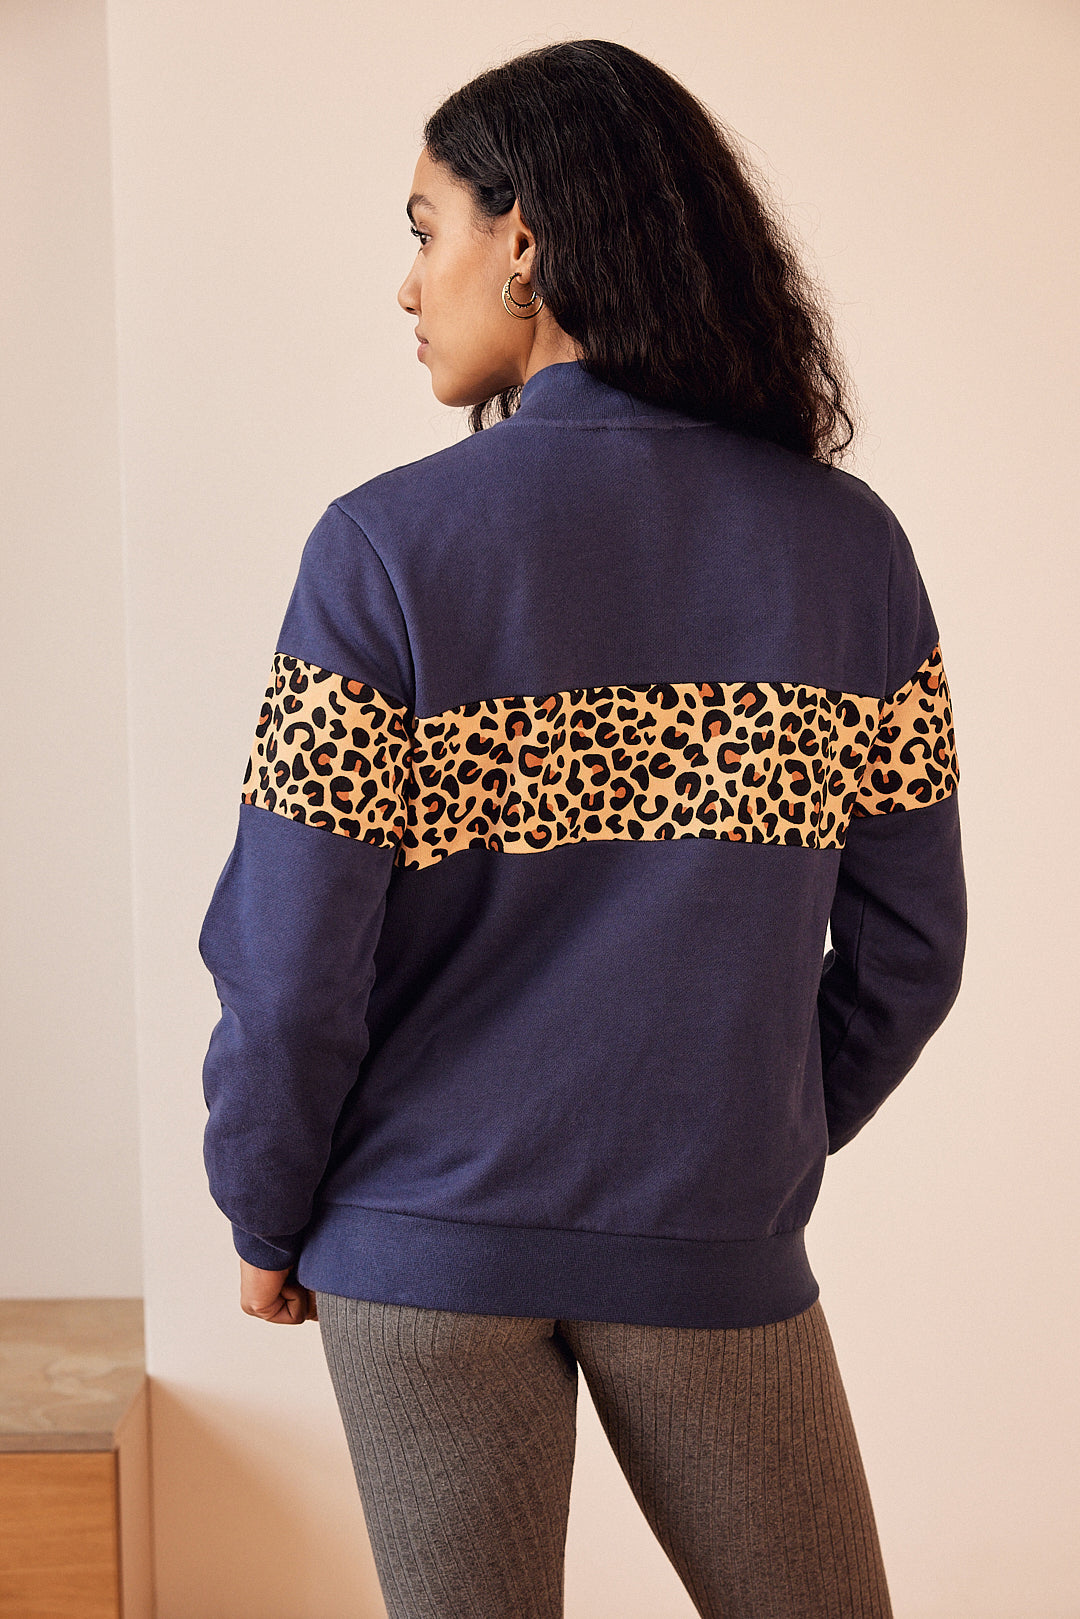 Anvers navy and leopard sweatshirt